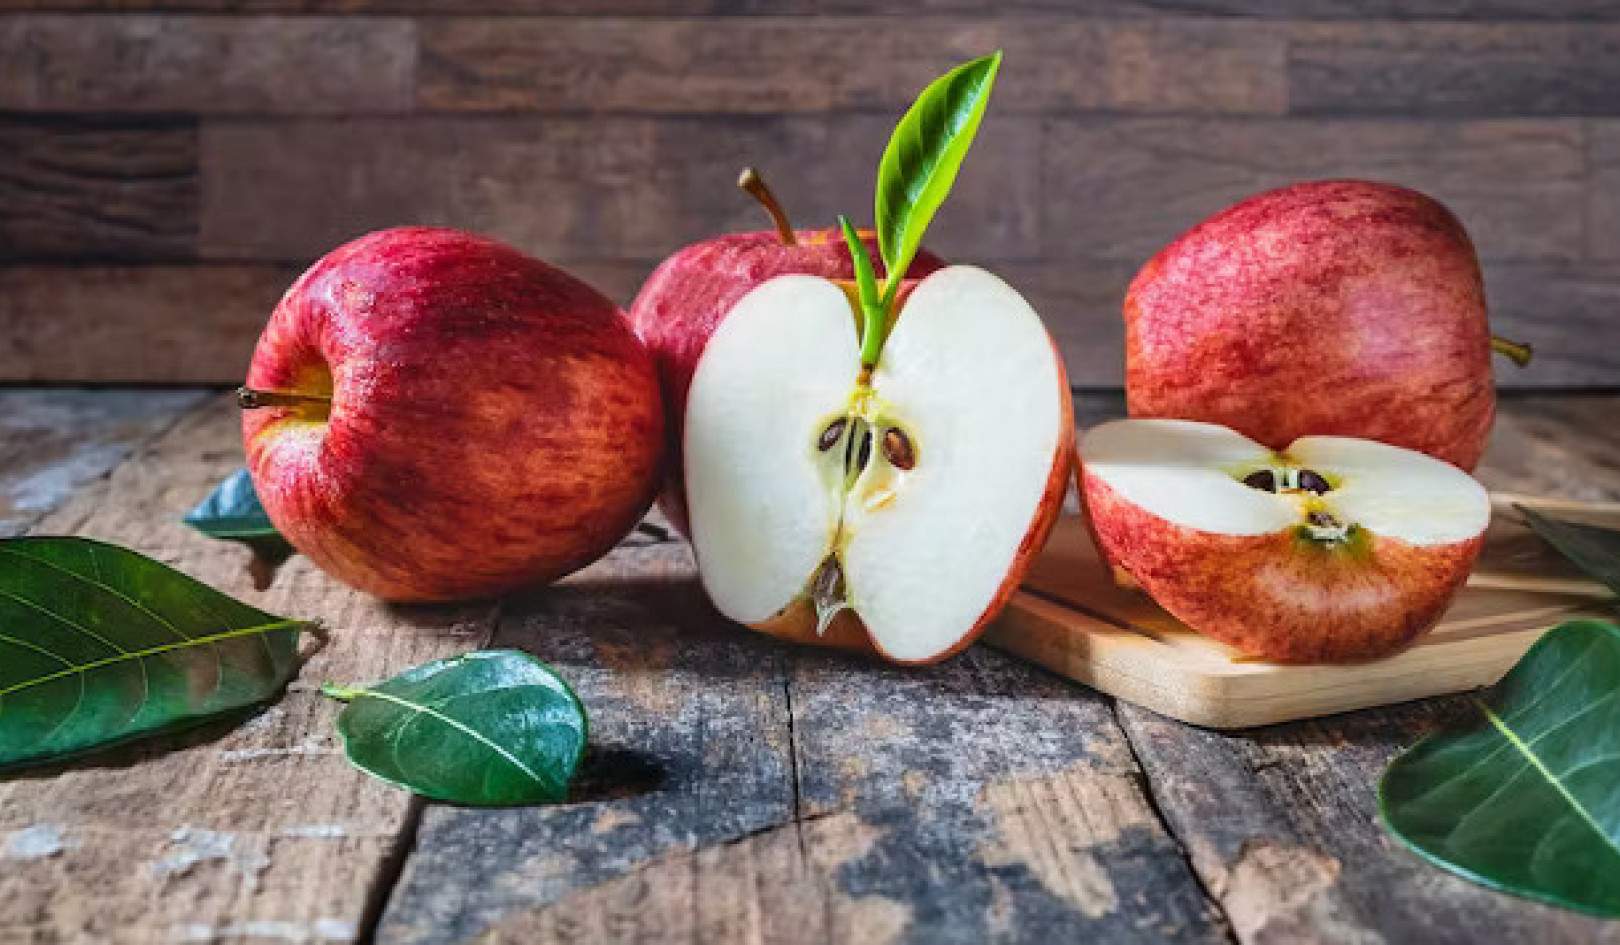 Un măr pe zi chiar ține doctorul departe?